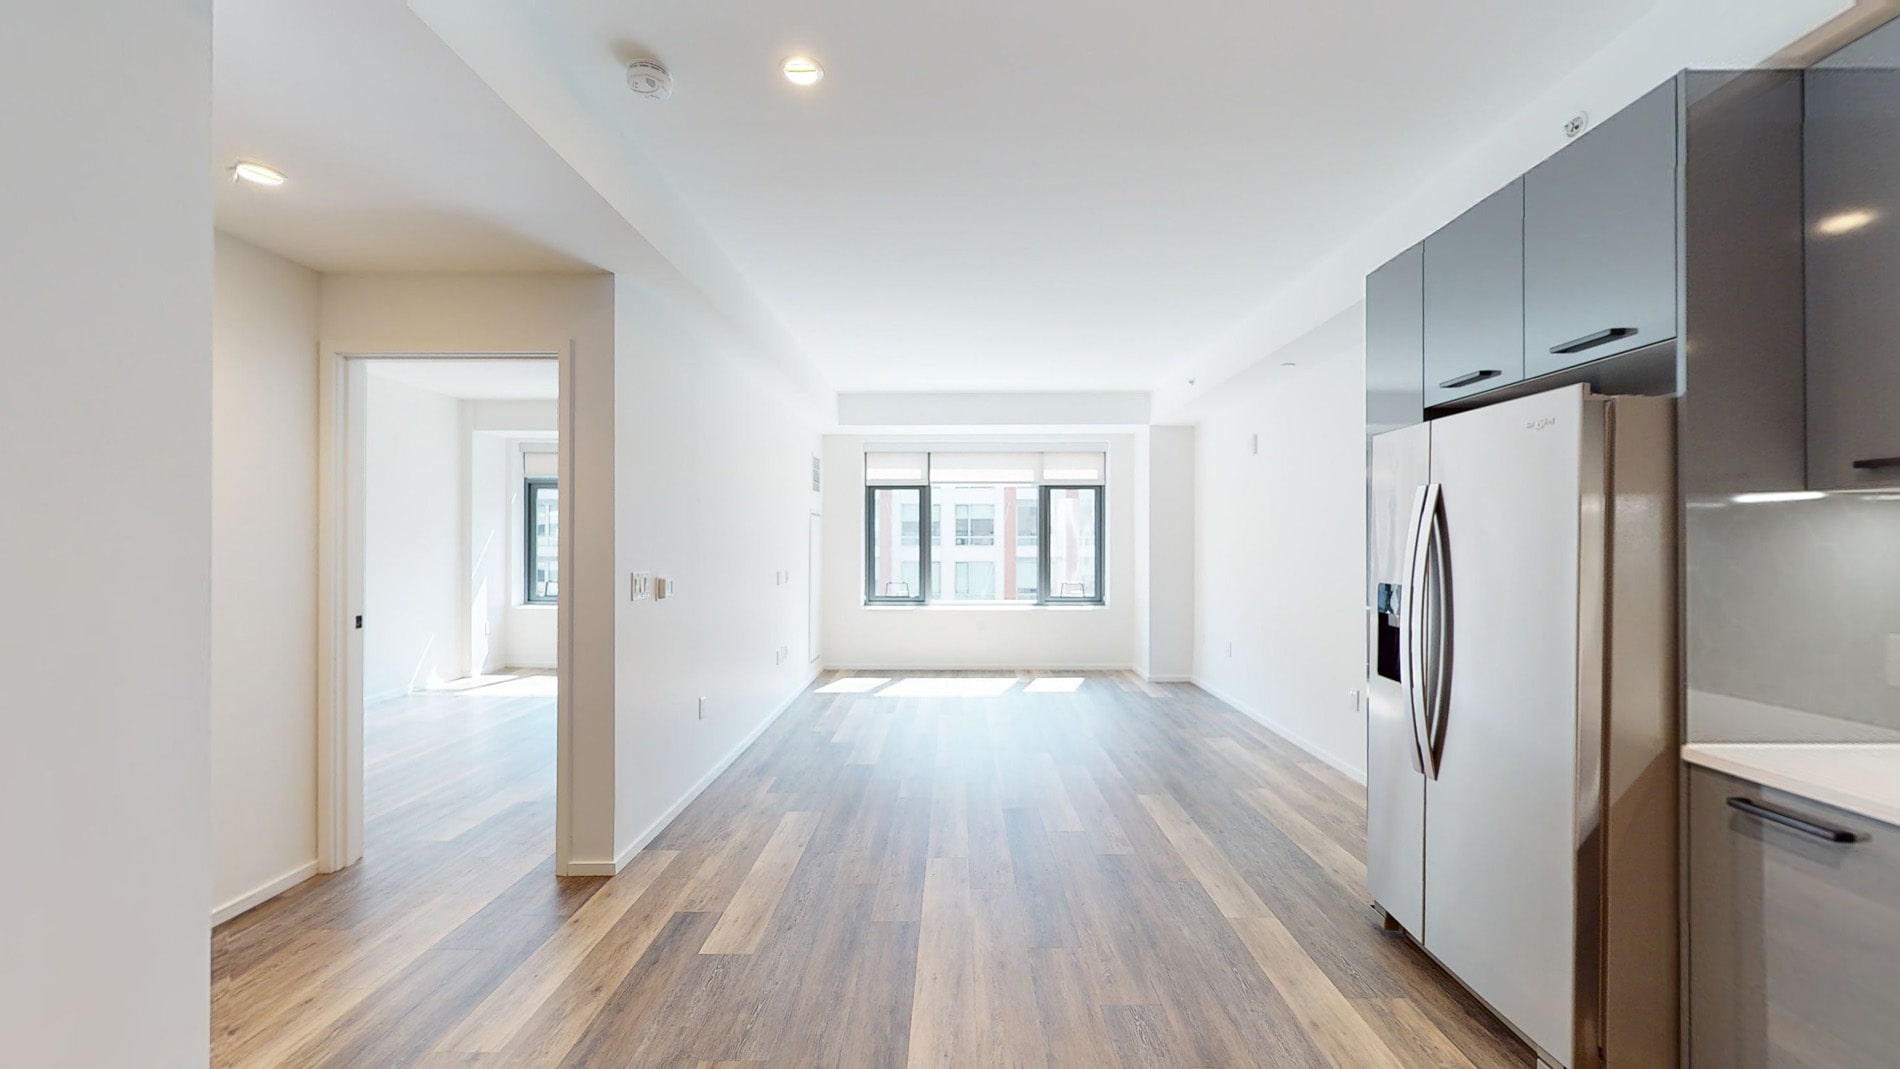 Photos of apartment on Northampton St.,Boston MA 02118